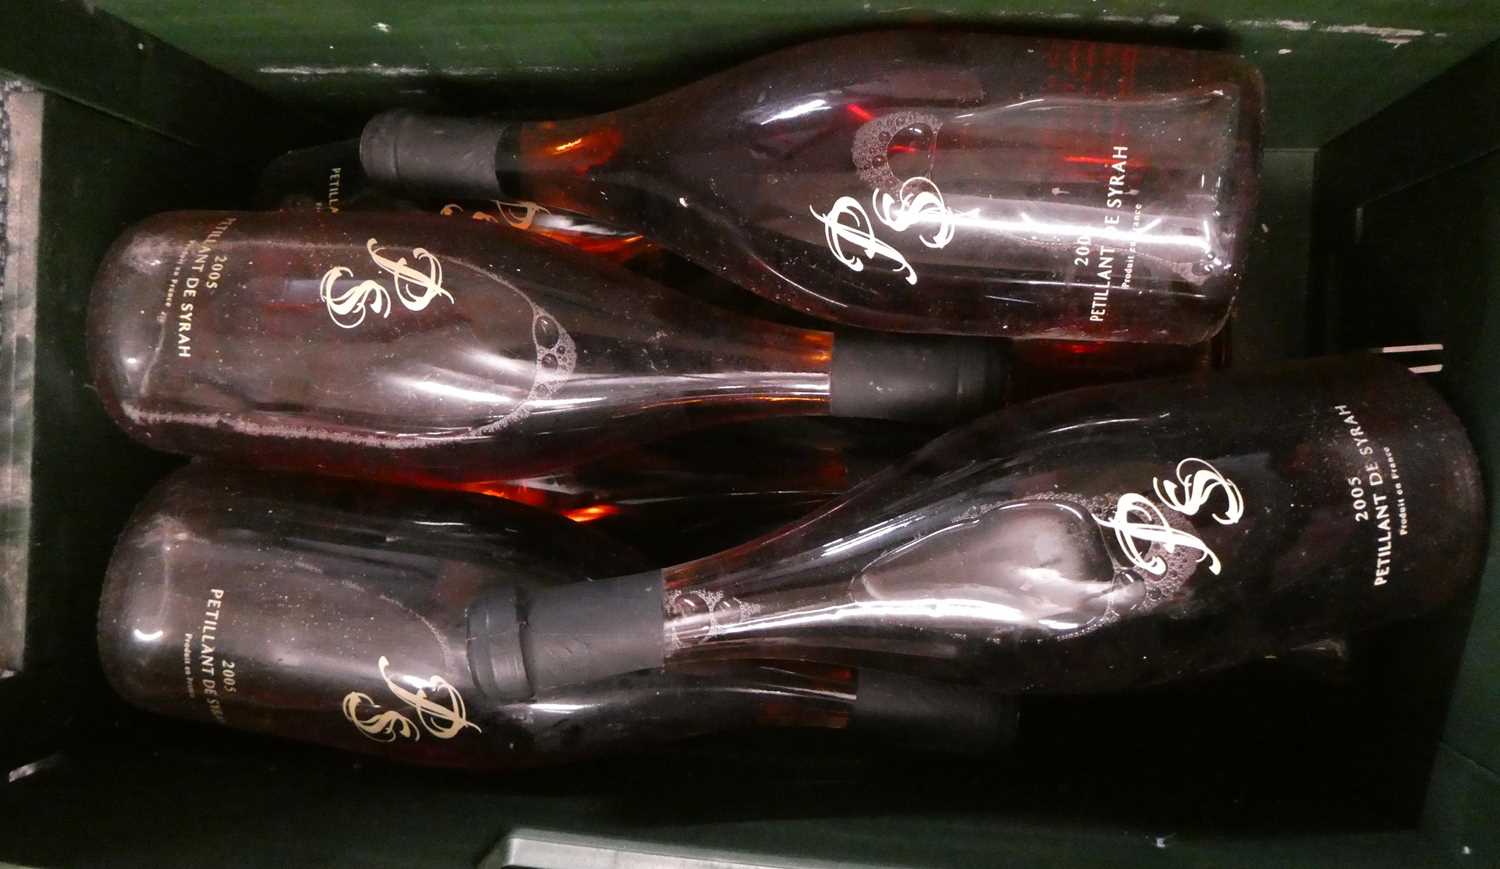 8 bottles Petillant de Syrah PS rose, 4 2005 & 4 2006 (Est. plus 24% premium inc. VAT) Condition